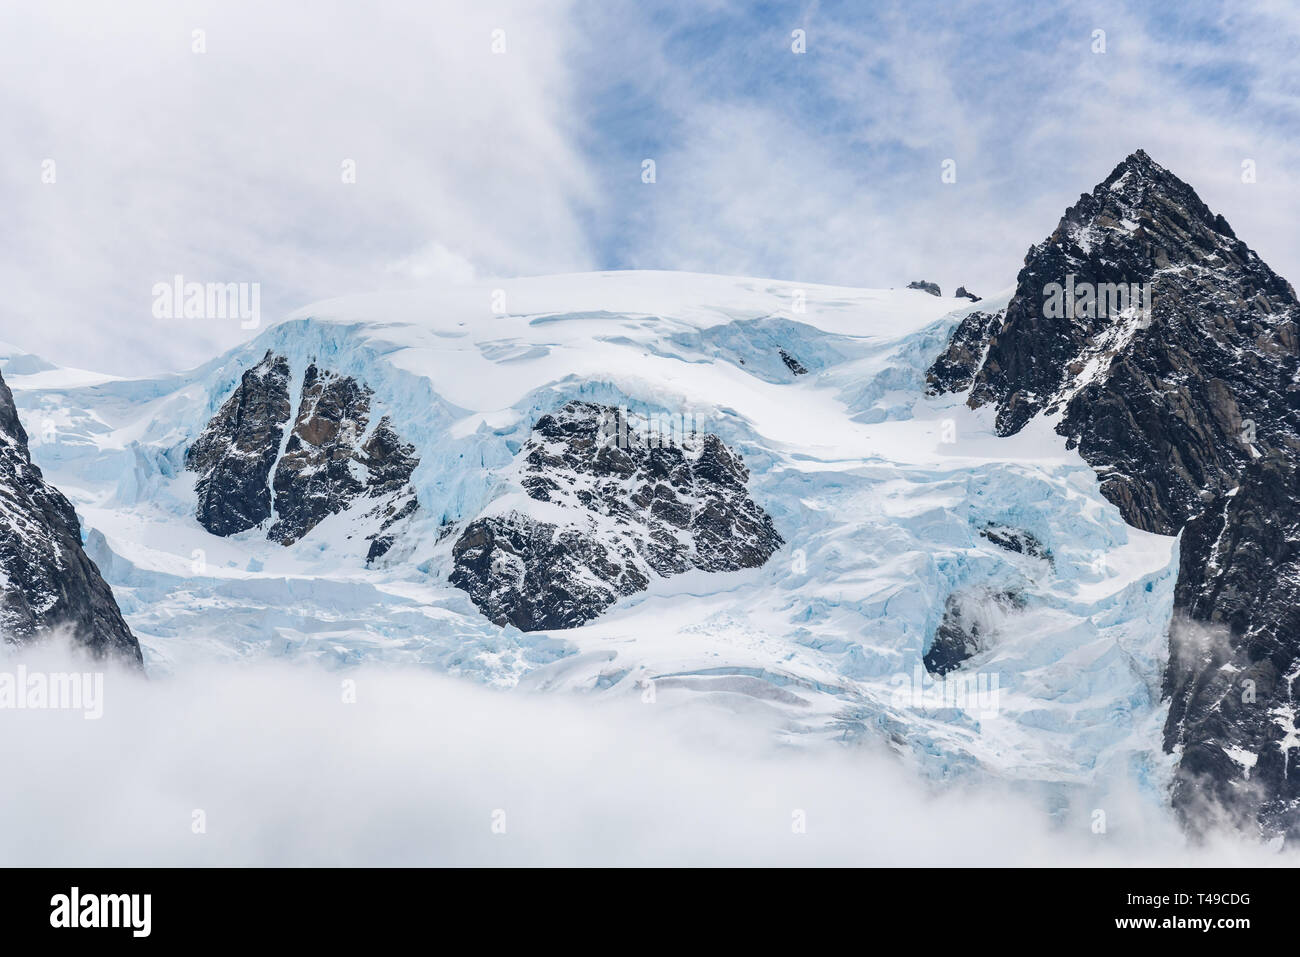 Schnee und Gletscher Eis bedeckt Rocky Mountain Peak, mit Nebel unten und leichte weiße Wolken am blauen Himmel, die Drygalski Fjord, Südgeorgien Stockfoto